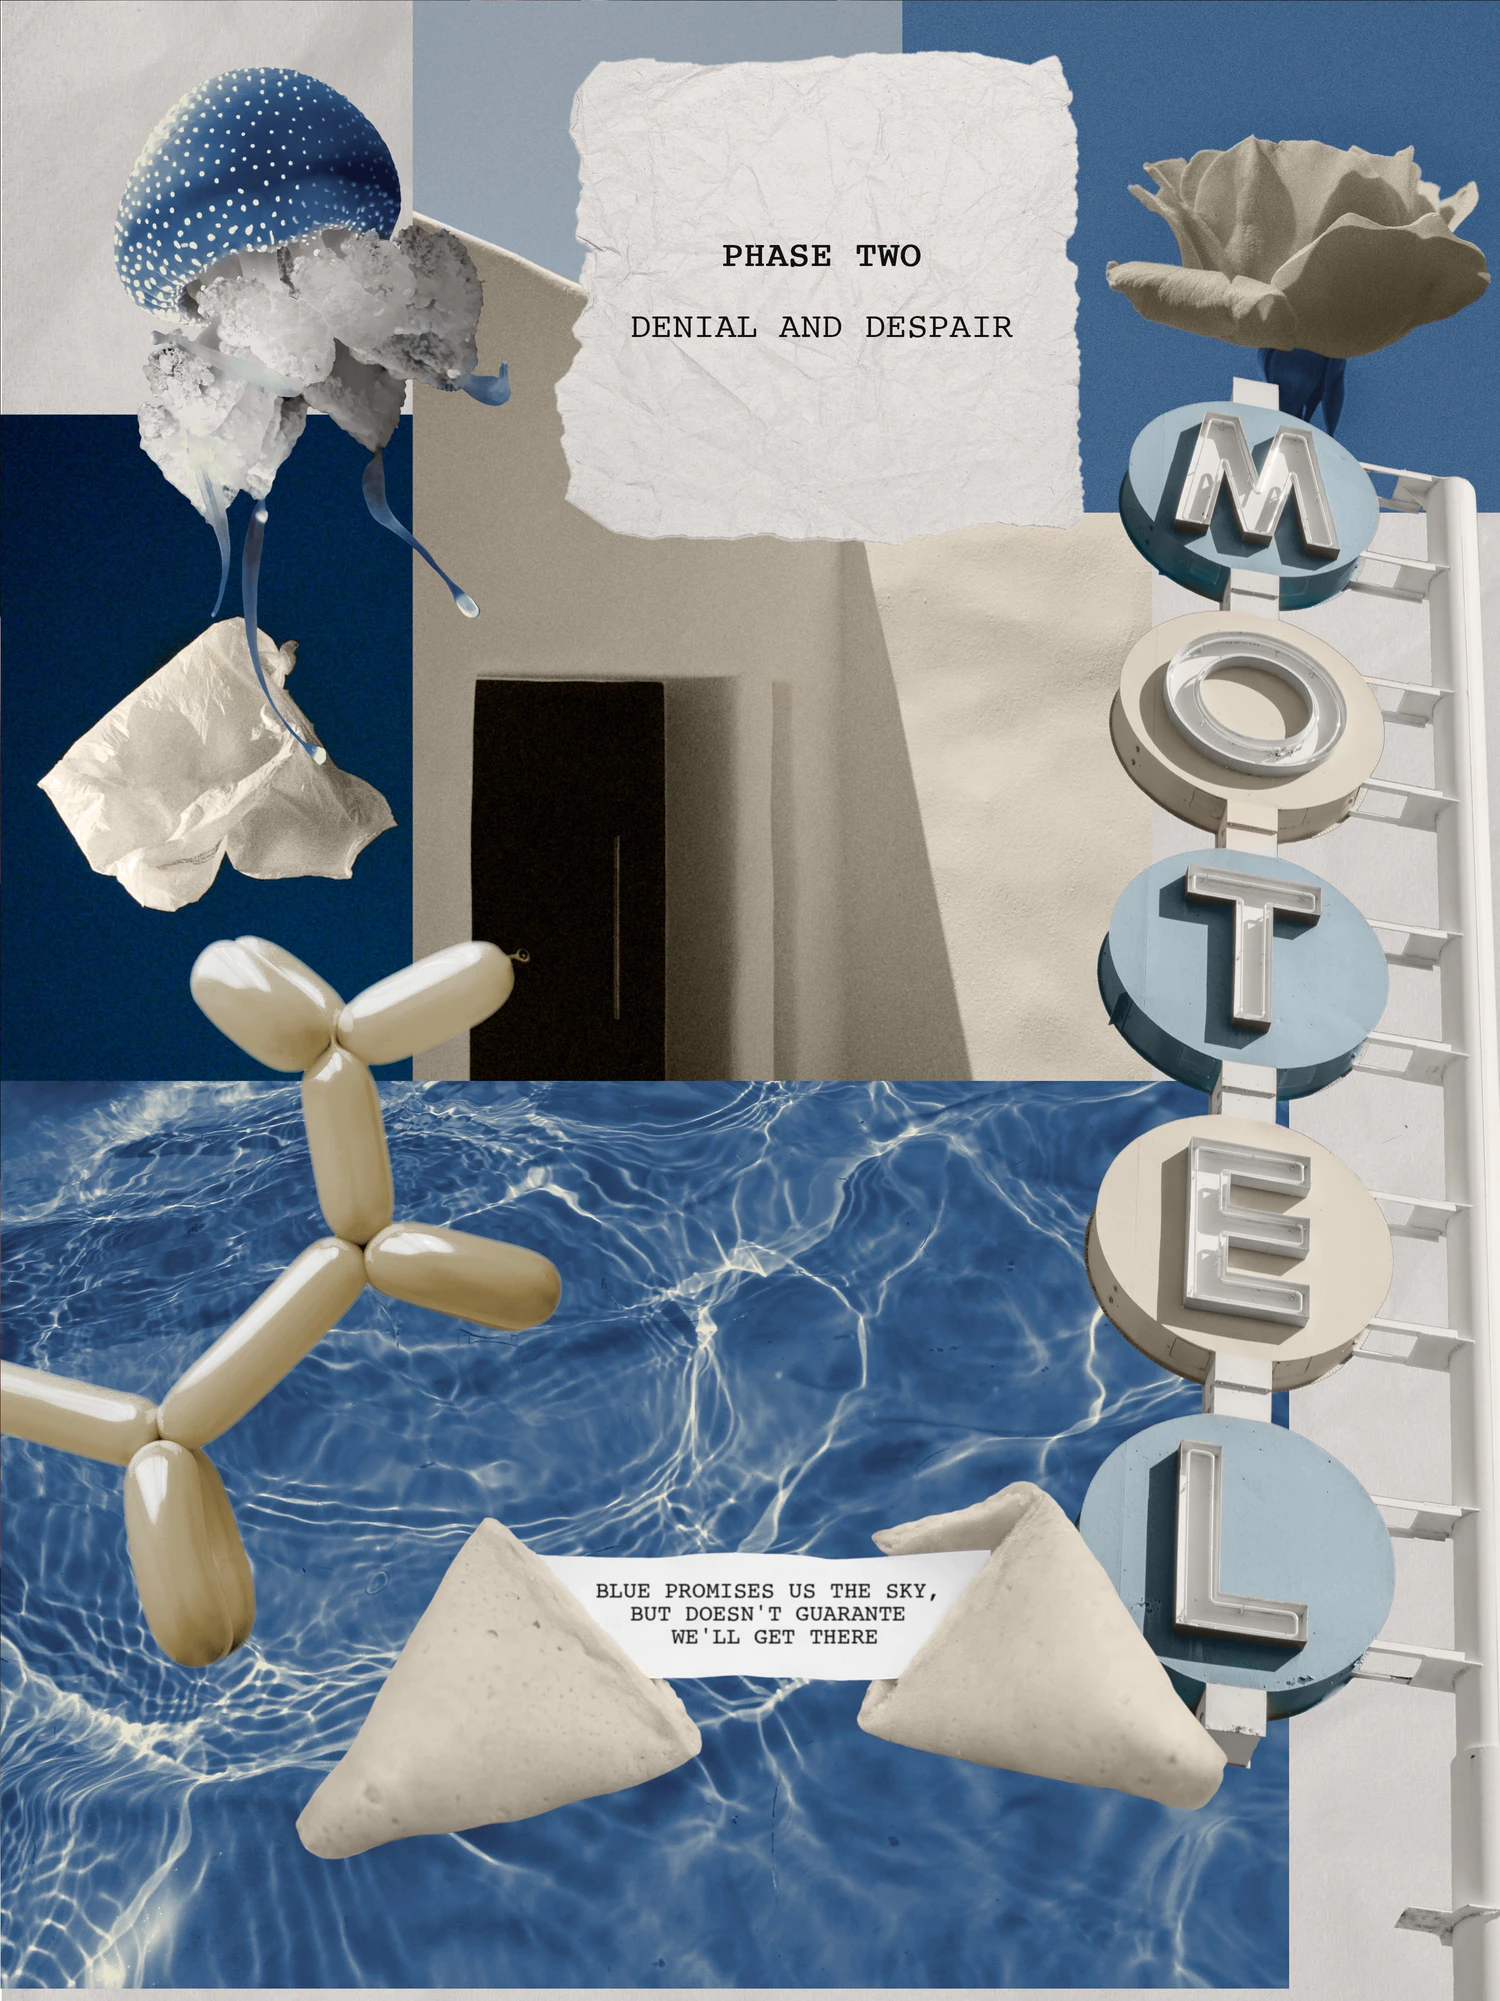 5219 抽象几何彩色图形元素海报封面网页社交媒体包装创意设计PNG透明背景素材 Metamorphosis Collage pack@GOOODME.COM